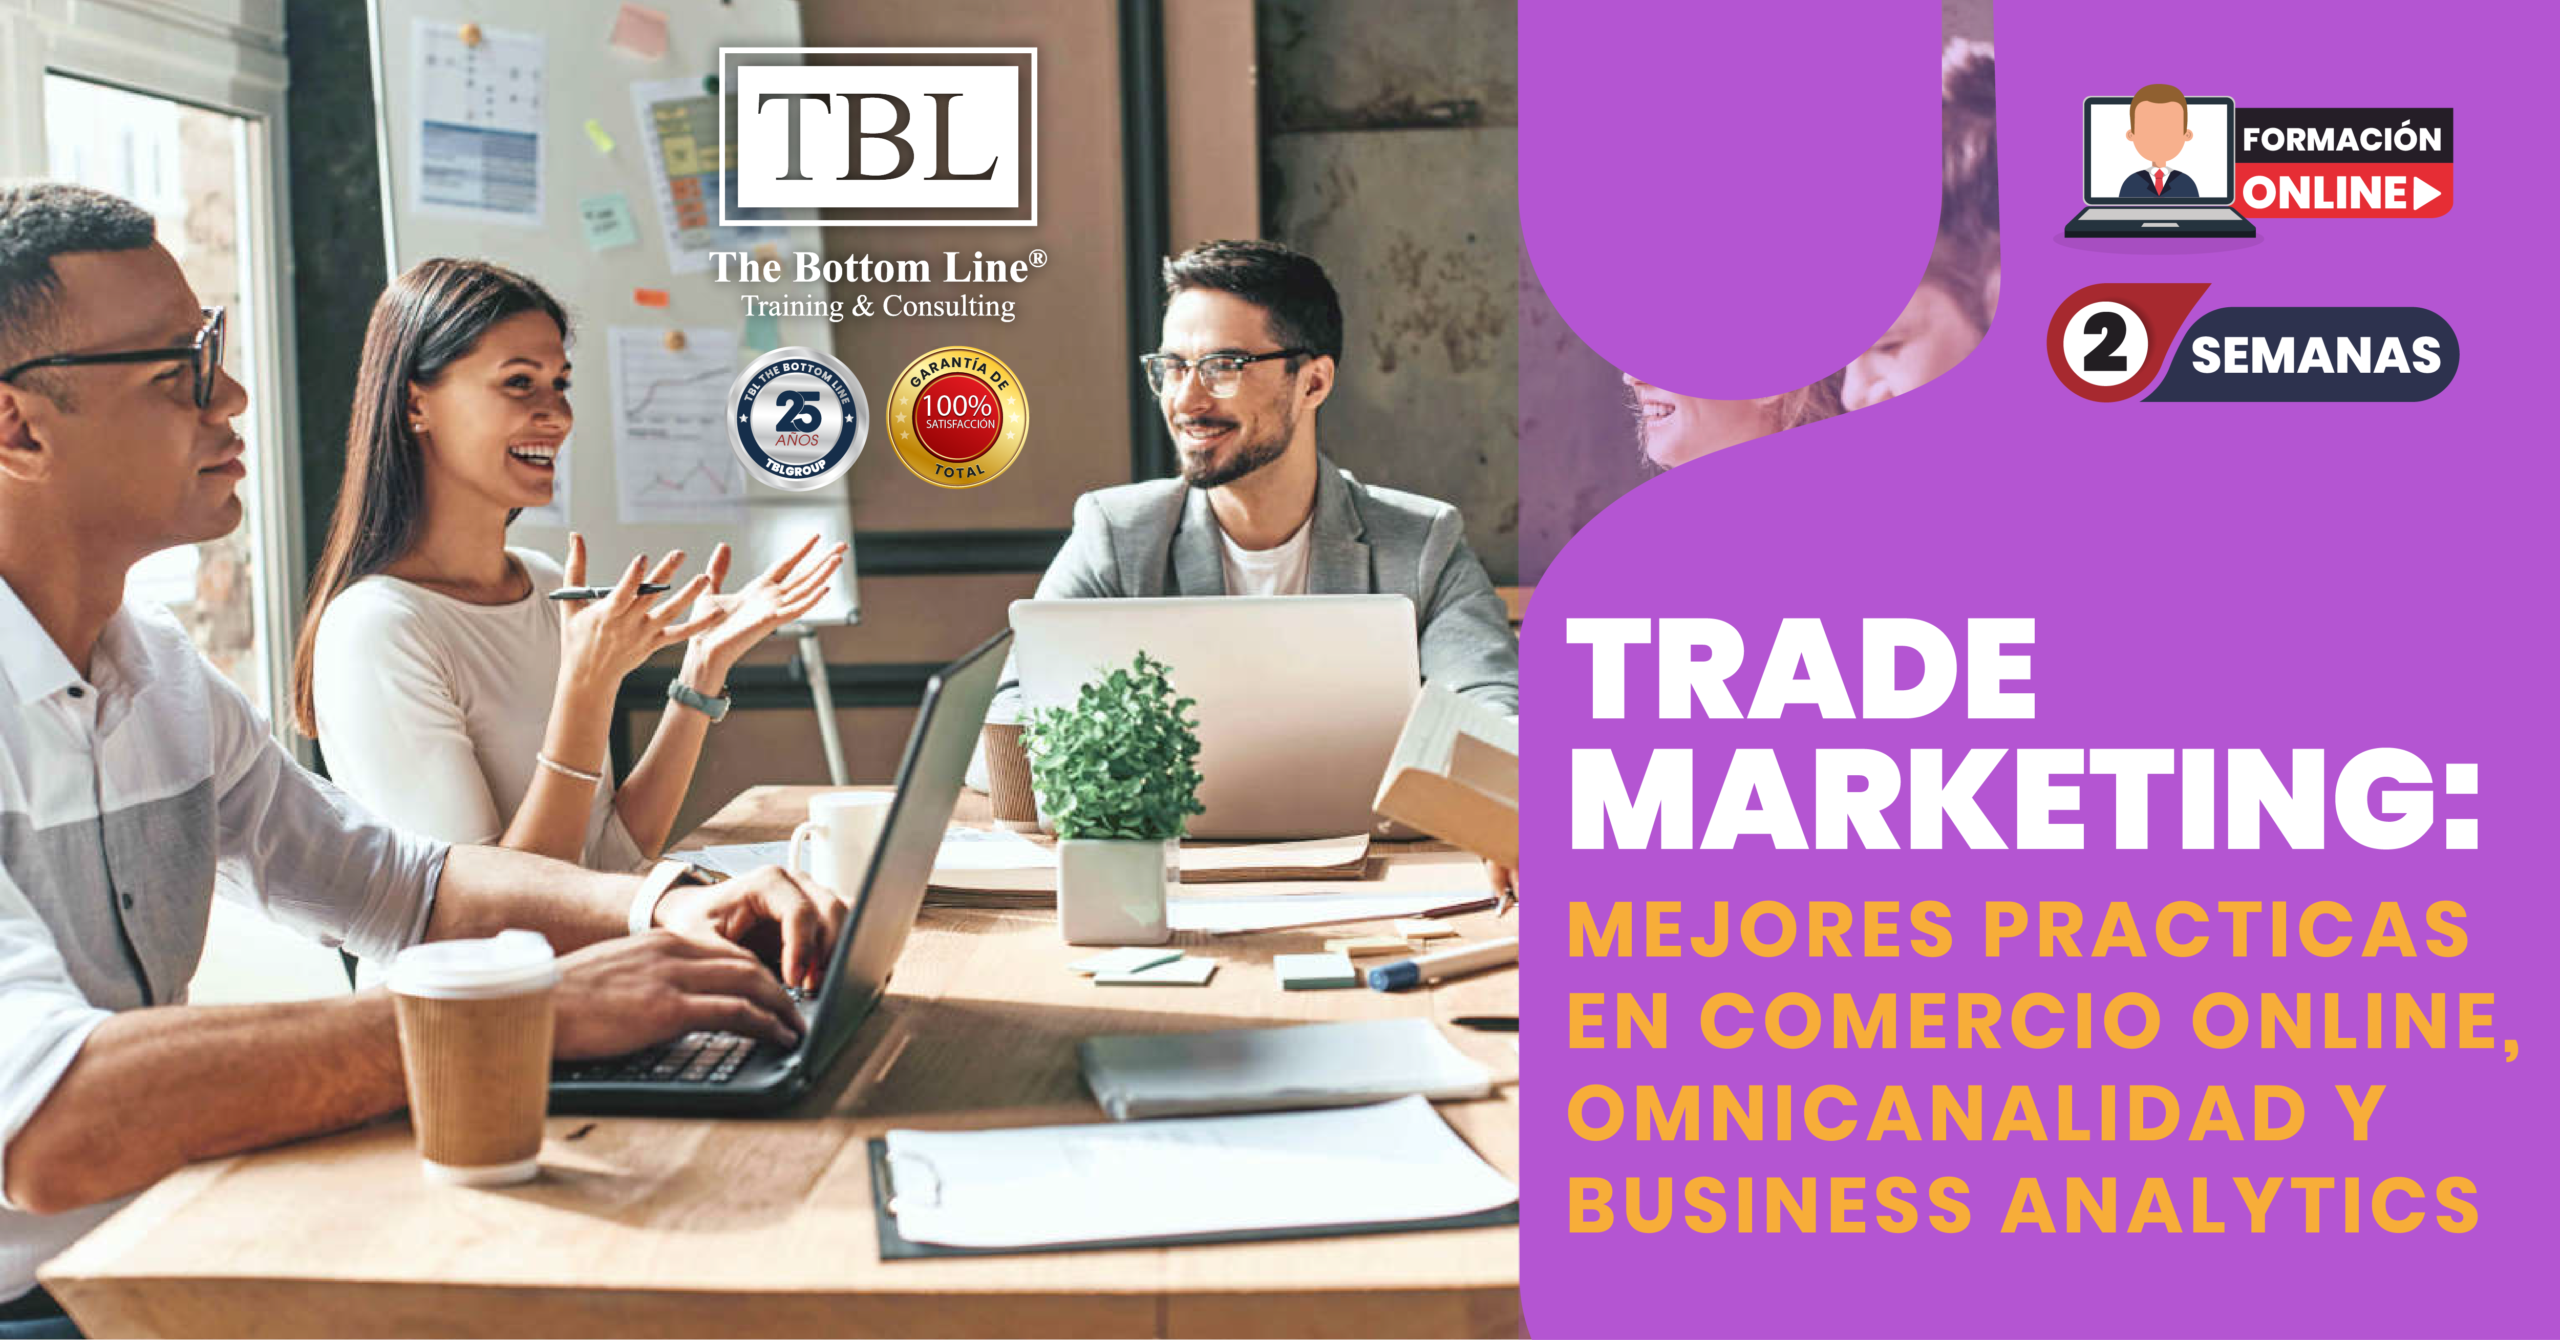 Trade Marketing: Mejores Prácticas en Comercio Online, Omnicanalidad y Business Analytics